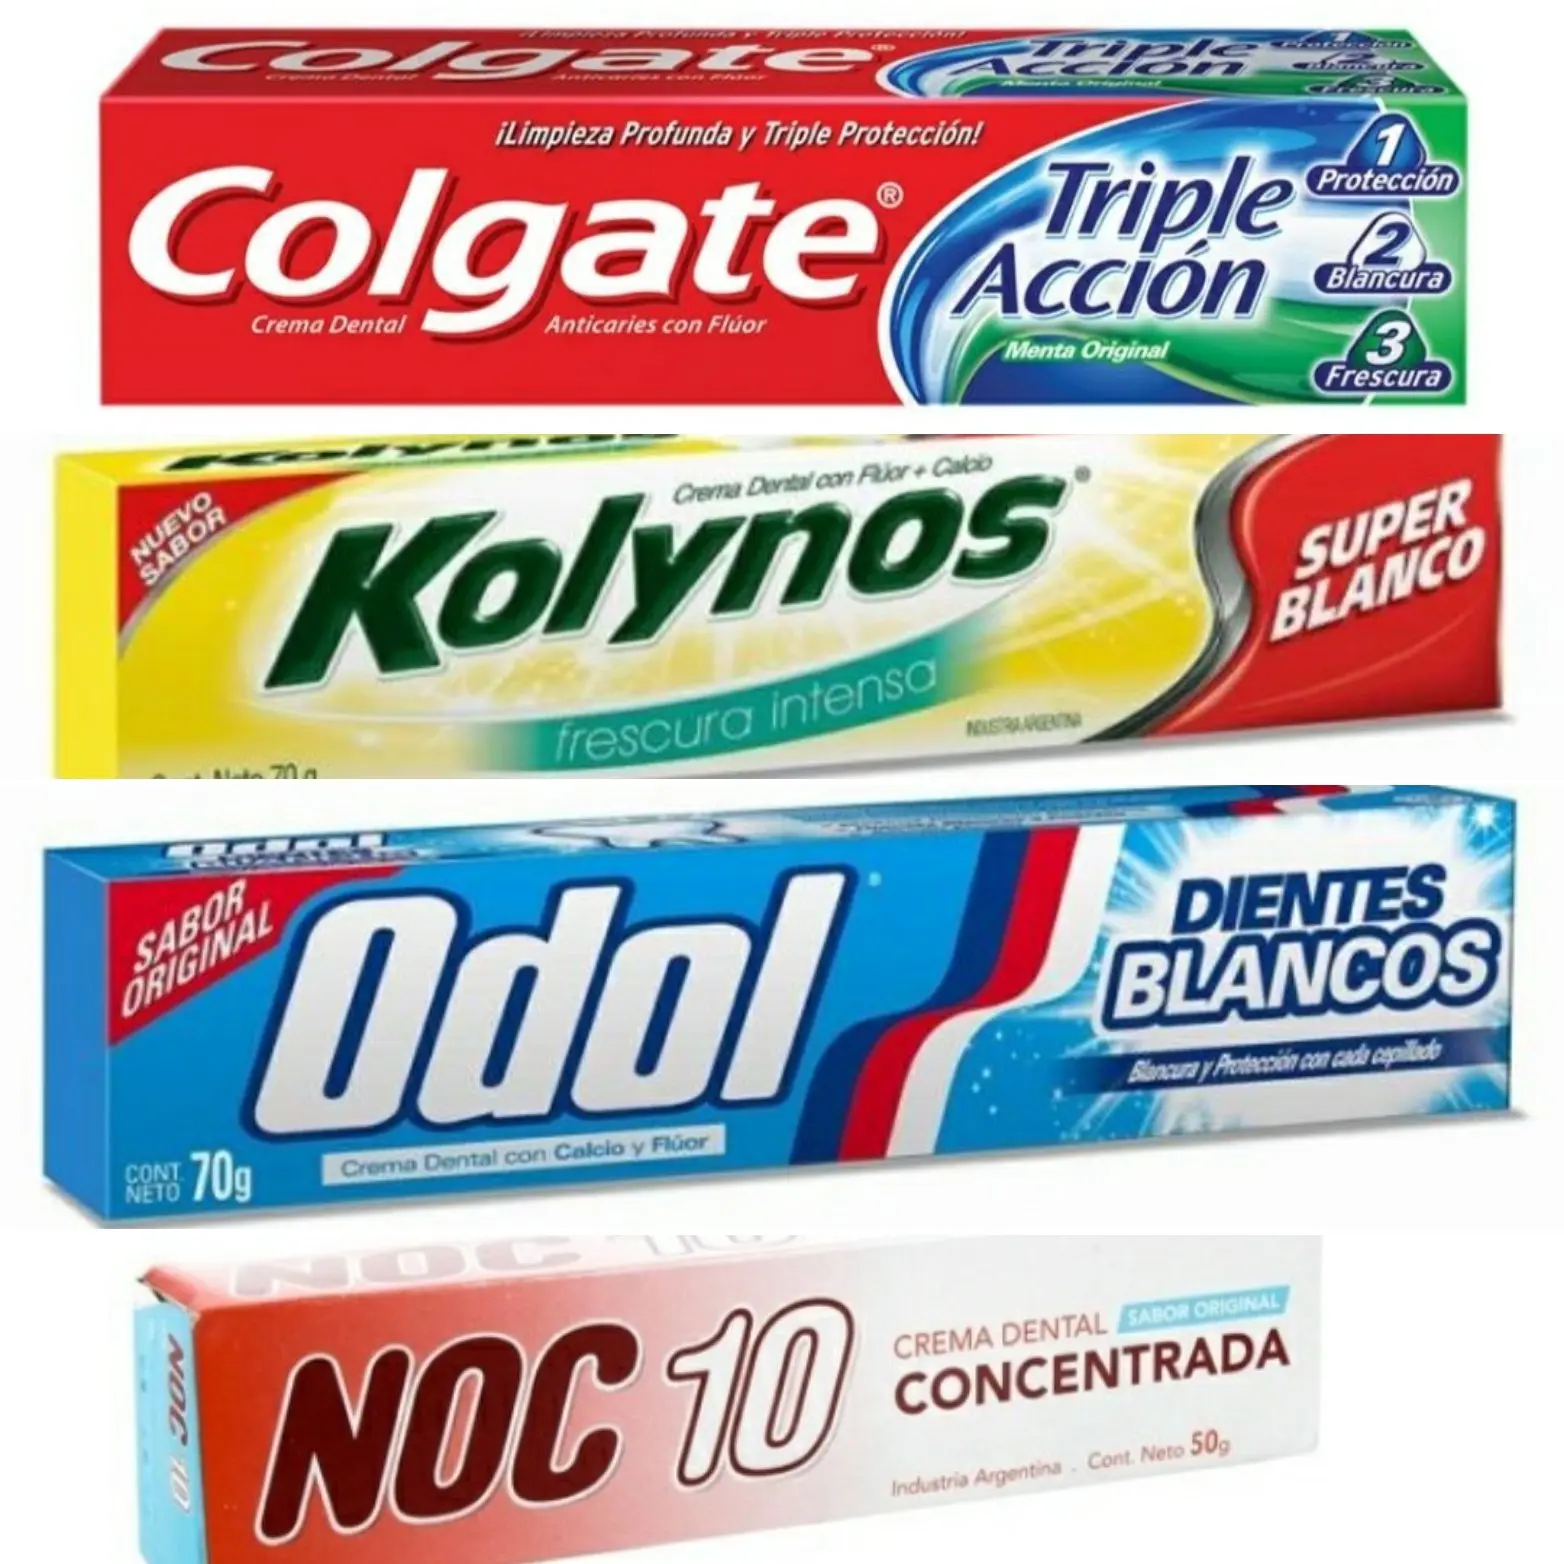 Pasta de dientes en argentina: marcas populares y beneficios